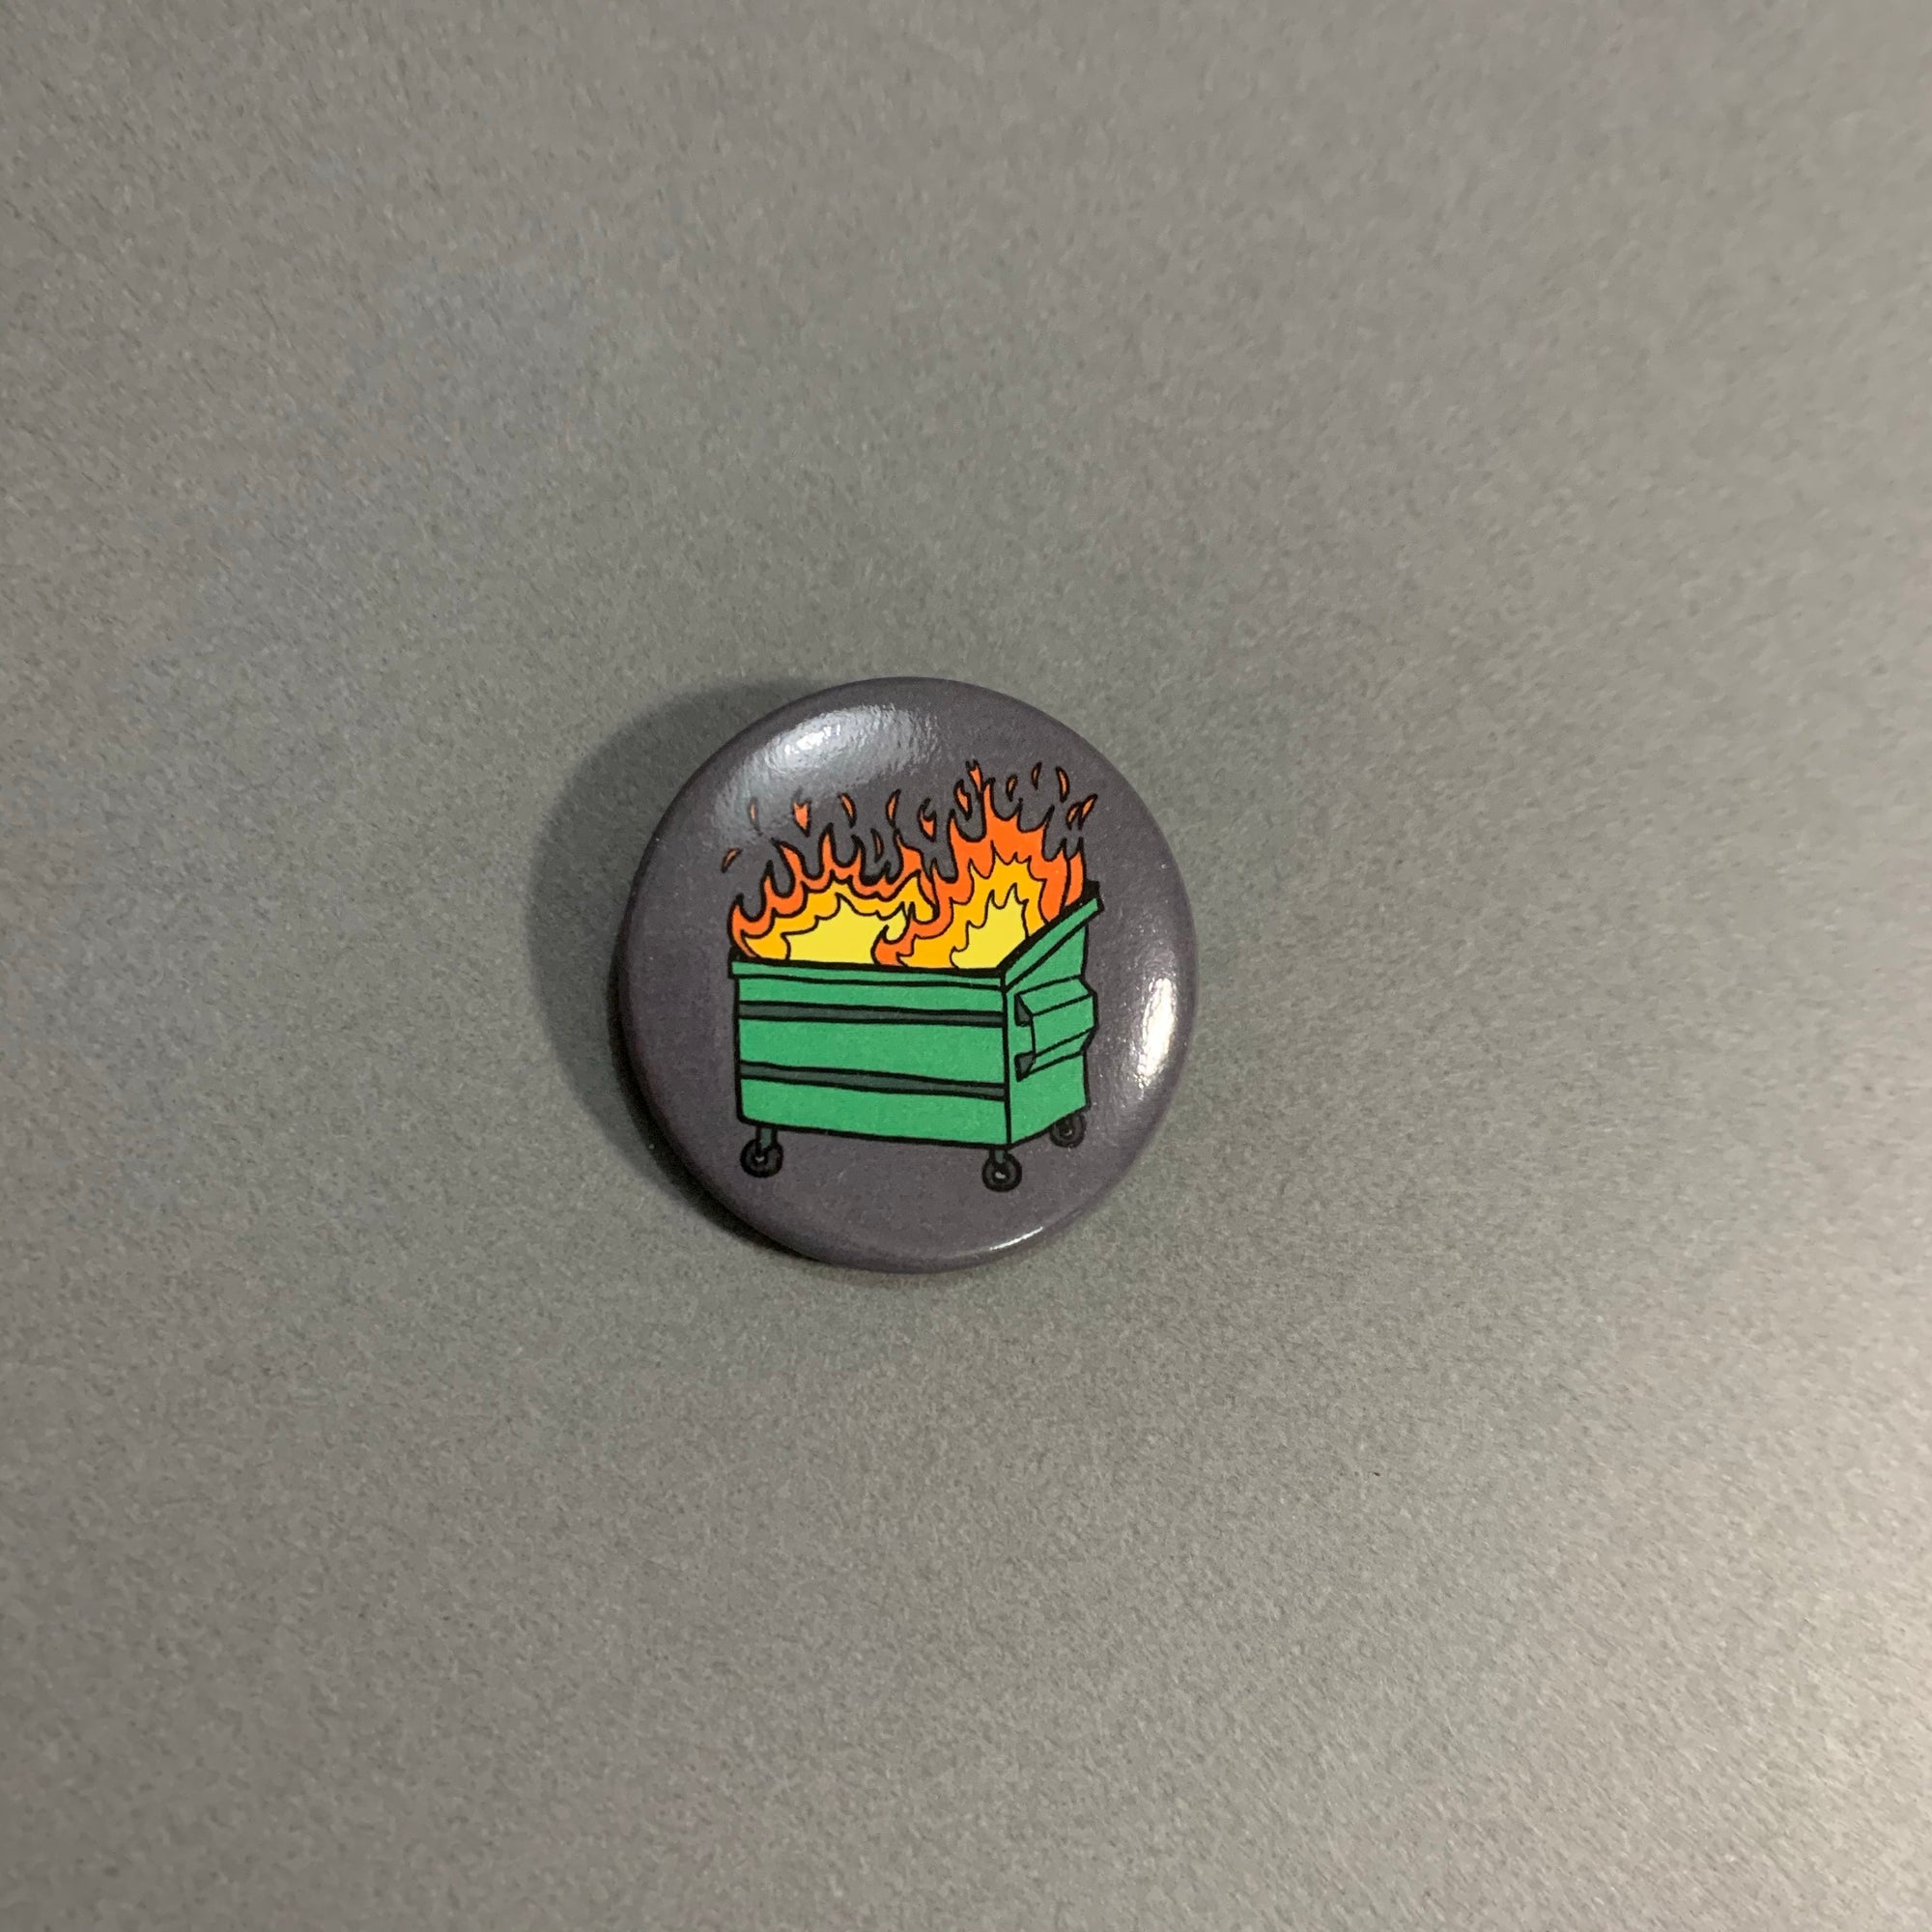 Dumpster Fire Button